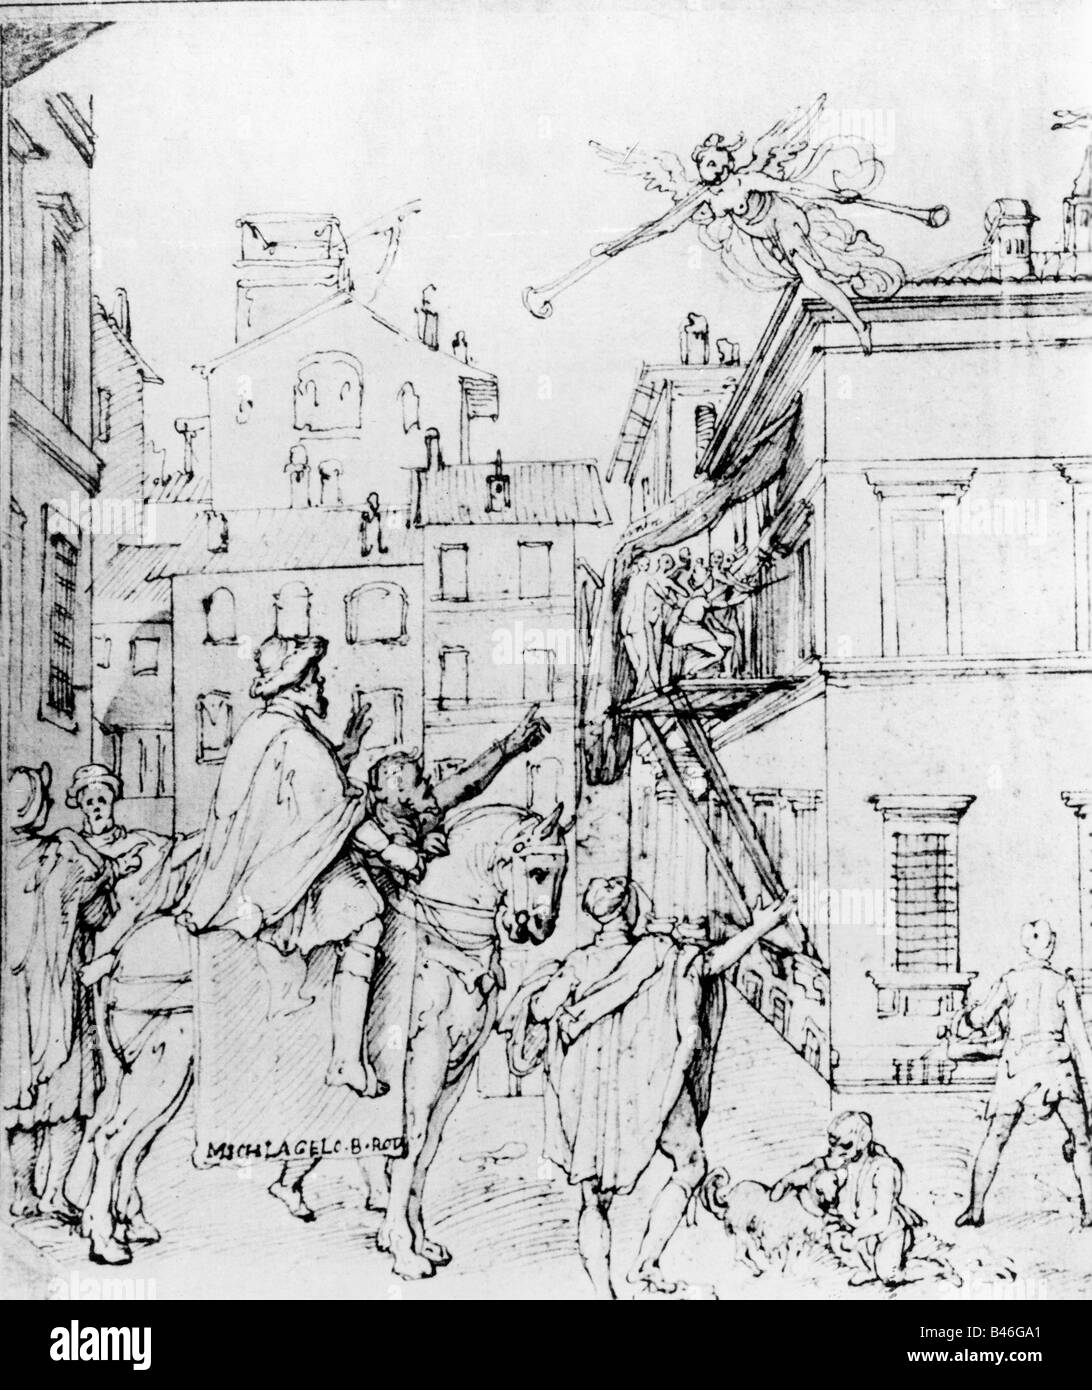 Michelangelo Buonarotti, 6.3.1475 - 18.2.1564, italienischer Bildhauer, der Taddeo Zuccaro bei seiner Arbeit beobachtet, Skizze von Federico Zuccaro, ca. 1560, Stockfoto